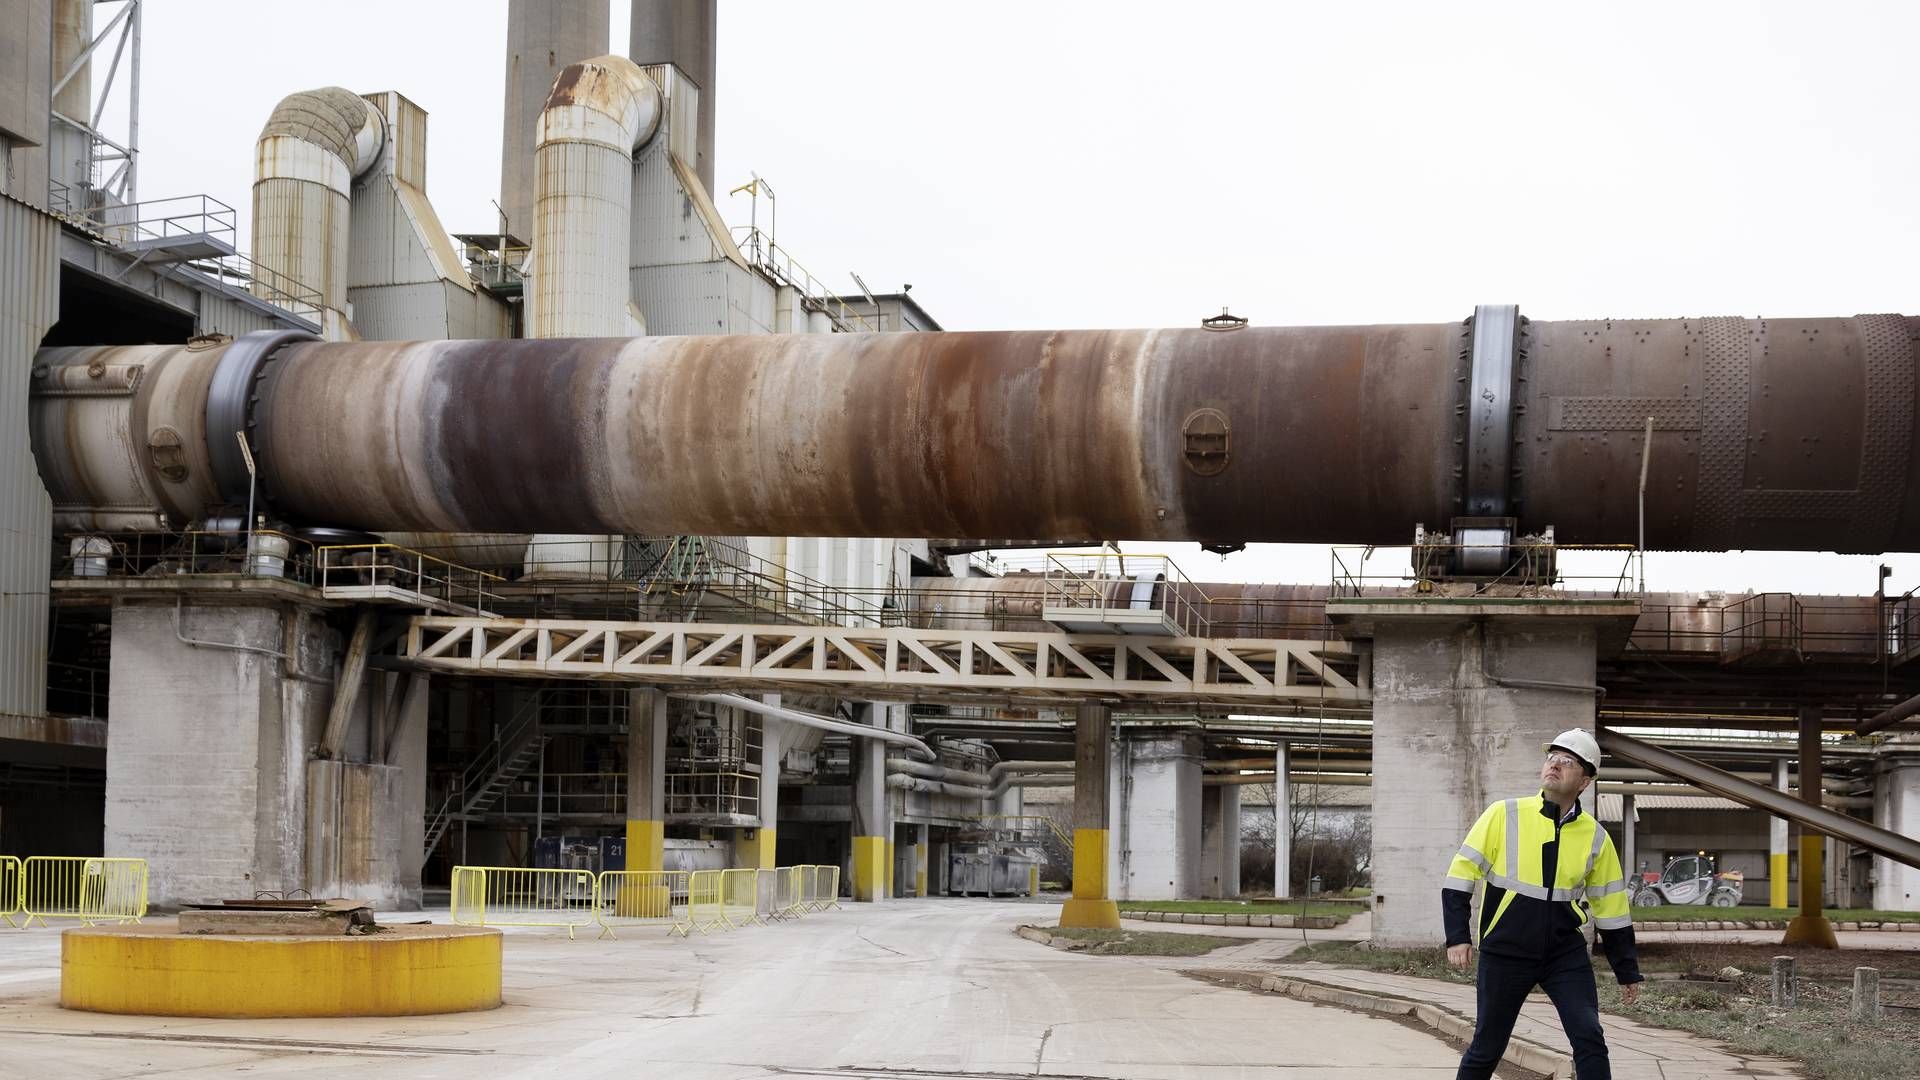 Cementproducenten Aalborg Portland er Danmarks største CO2-udleder. En høj, ensartet CO2-afgift kan betyde en ekstraregning på over 800 mio. kr. for virksomheden. | Foto: Thomas Borberg